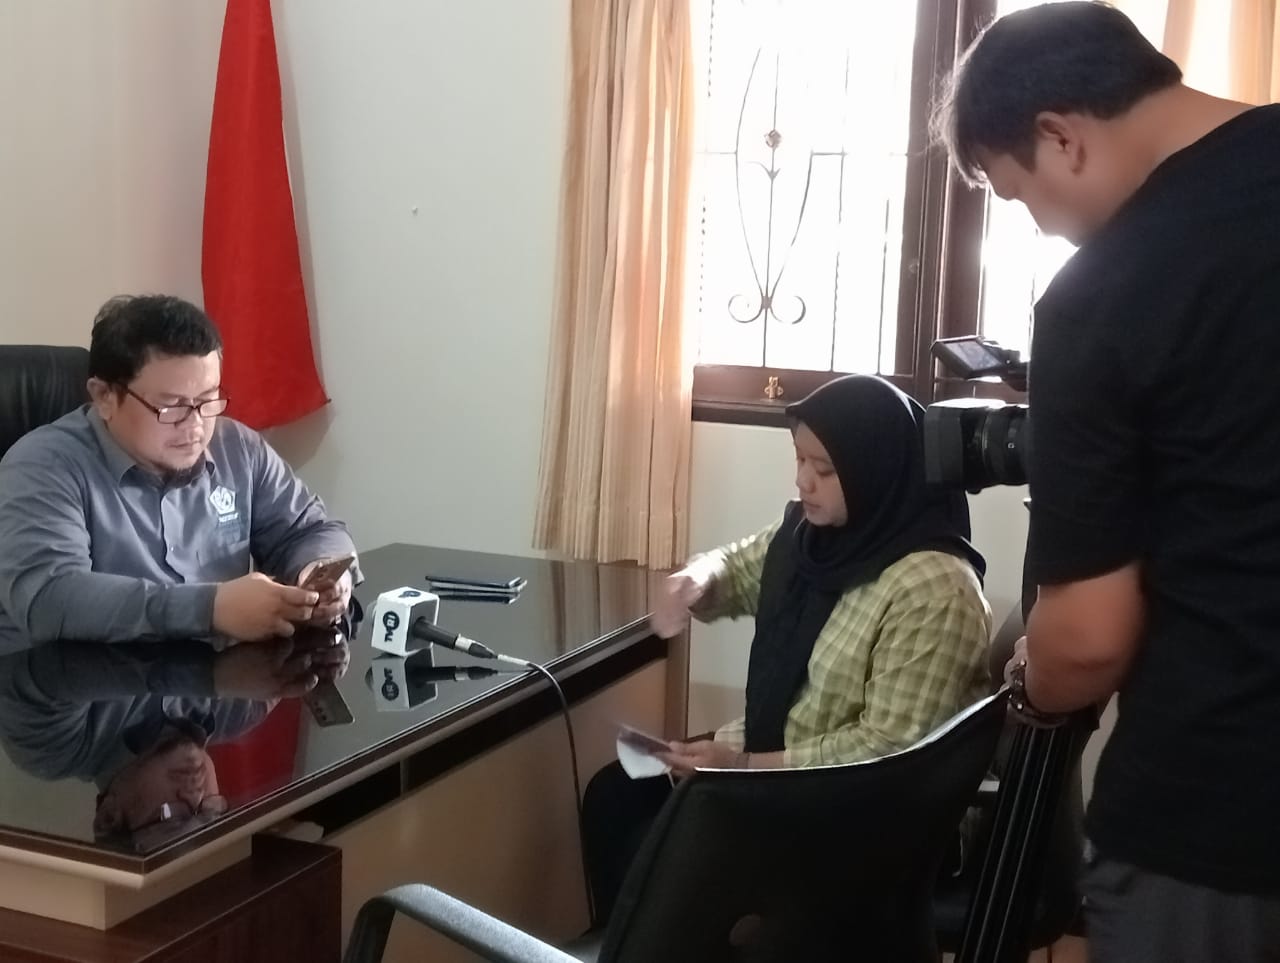 Ketua umum DPP PPDI H. Norman Yulian sedang akan diwawancara TVRI